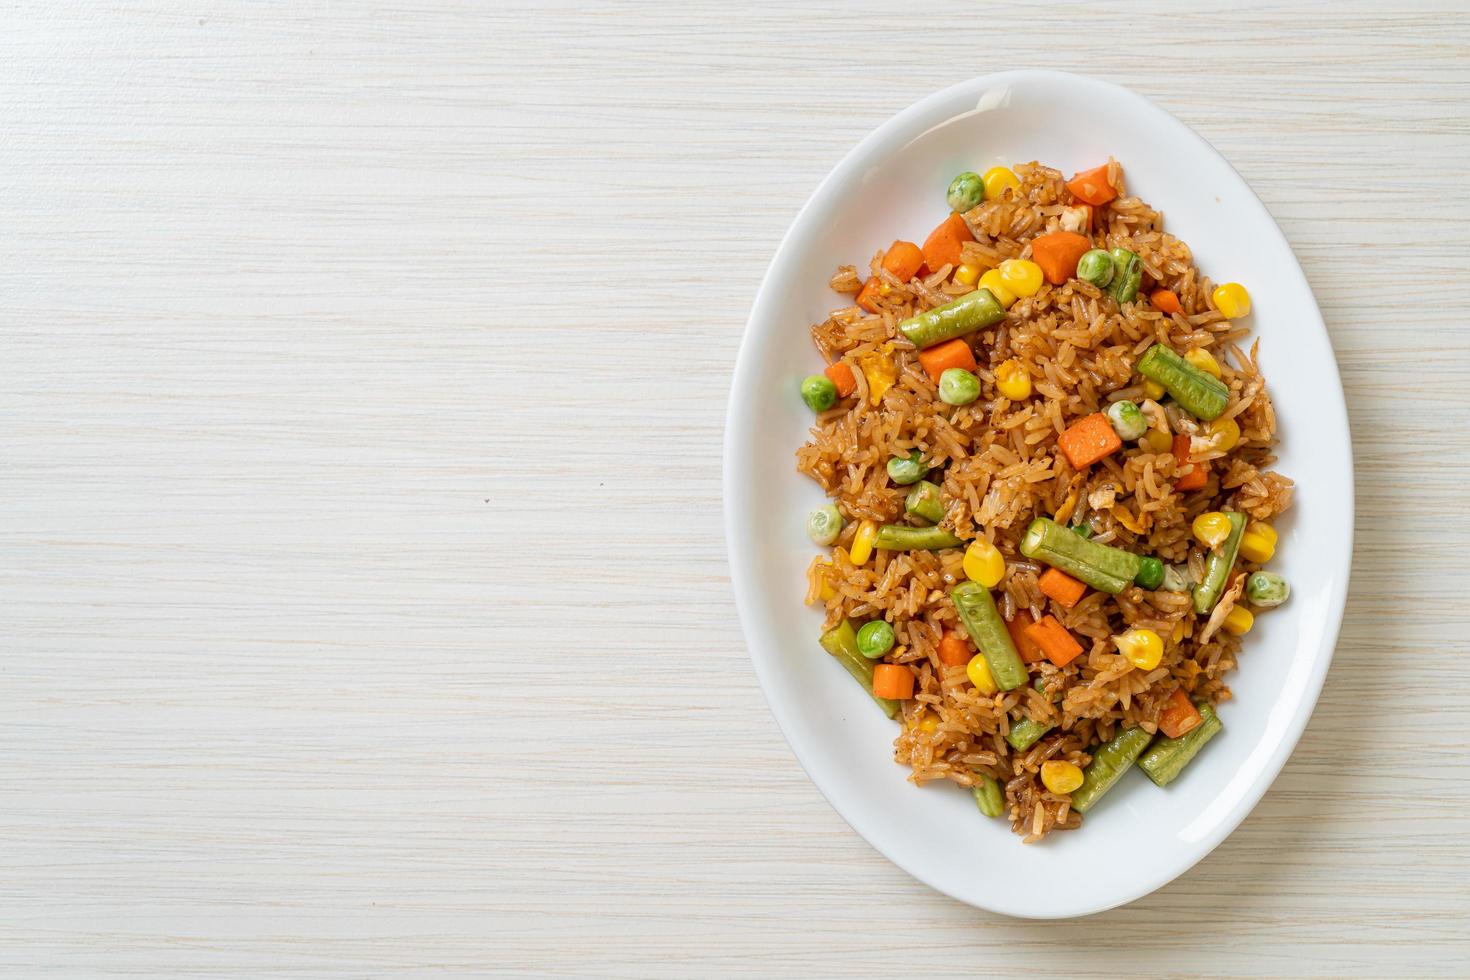 gebakken rijst met groene erwten, wortel en maïs - vegetarische en gezonde voedingsstijl foto